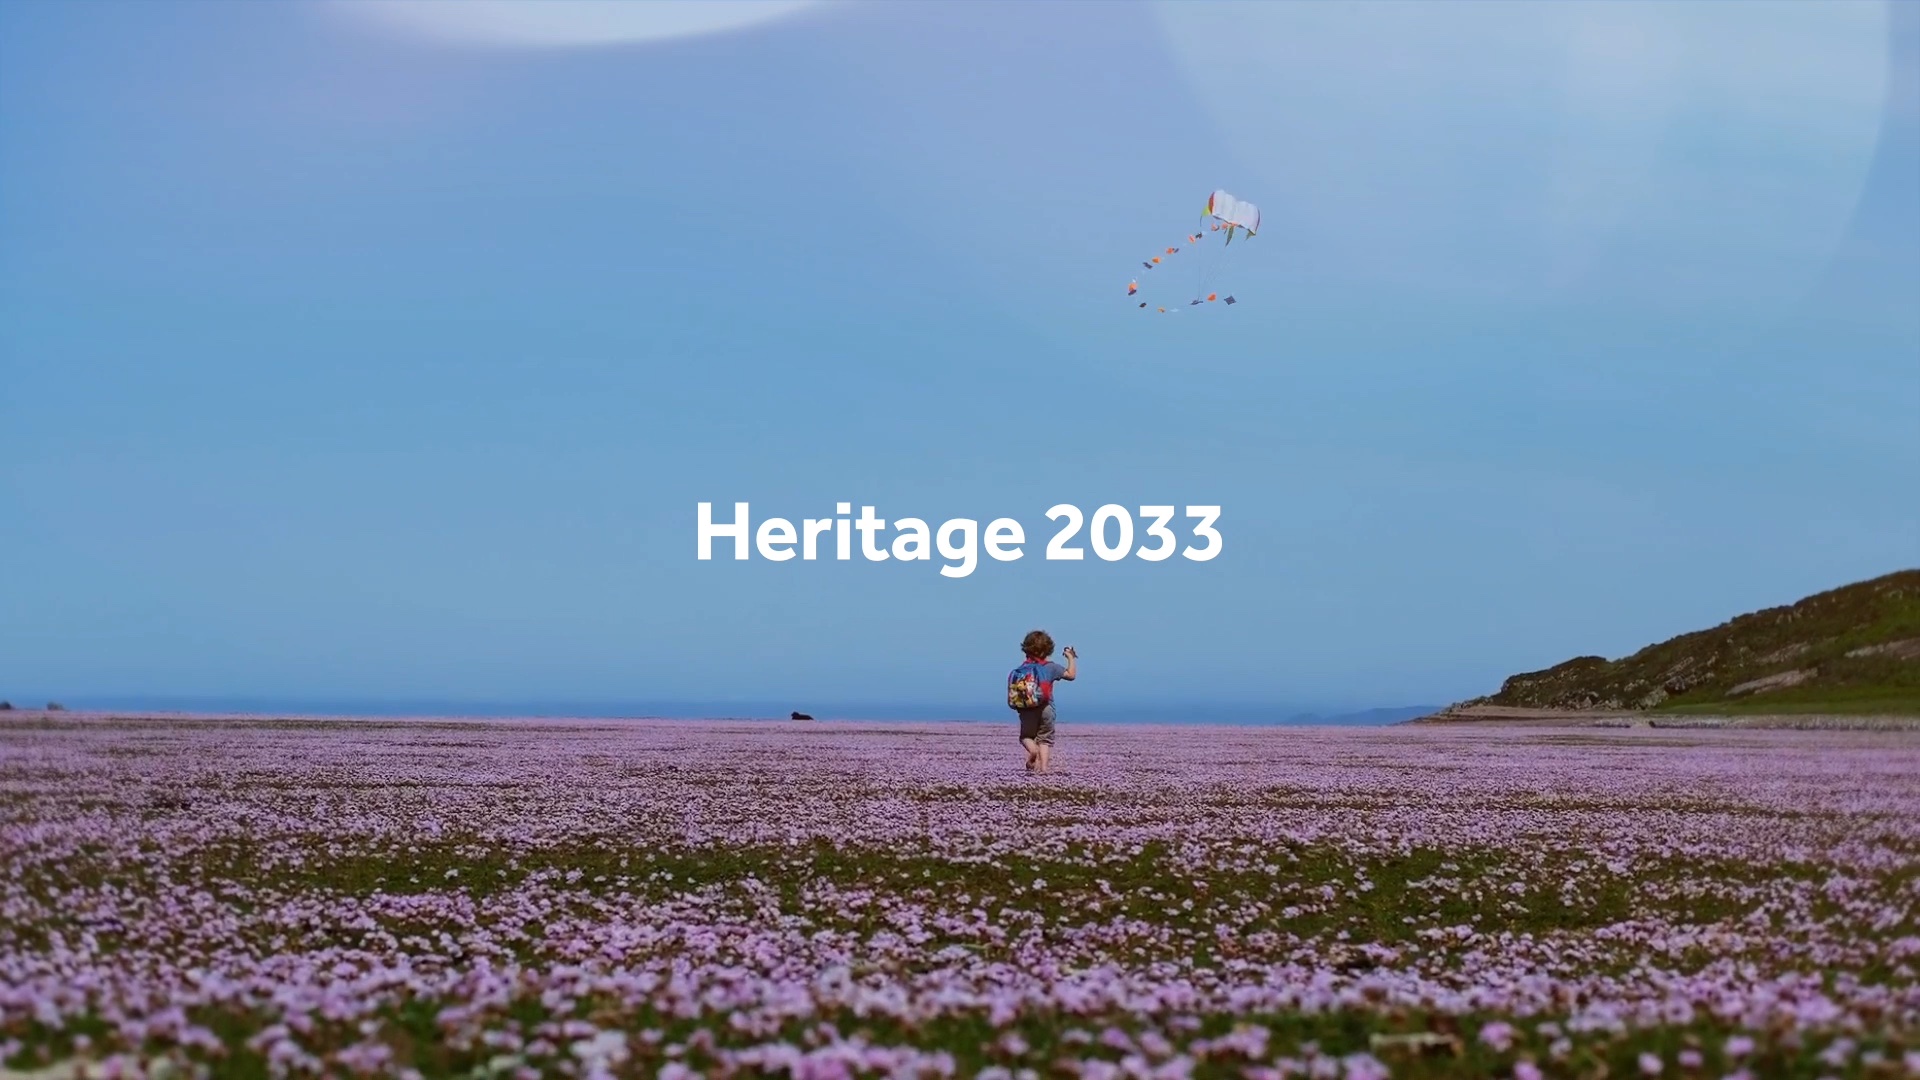 Heritage Fund – Heritage 2033